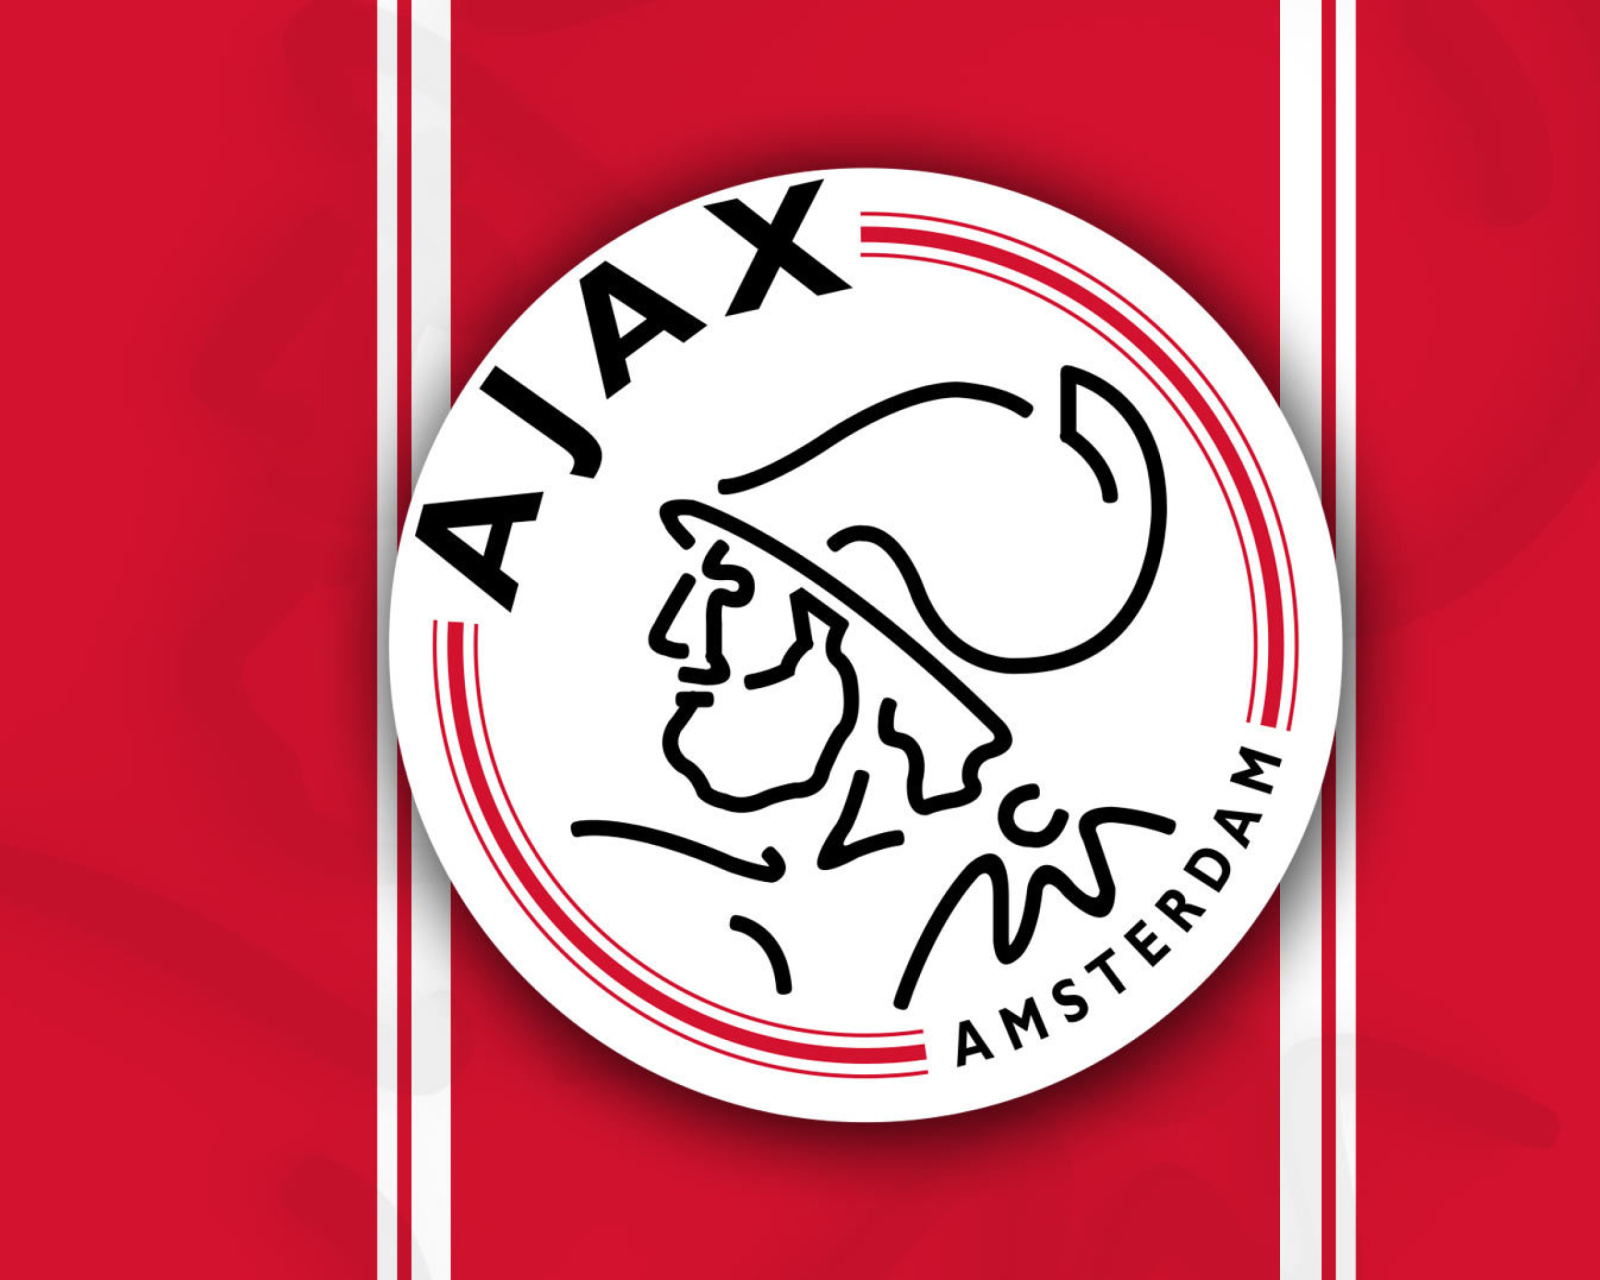 AFC Ajax Football Club wallpaper 1600x1280